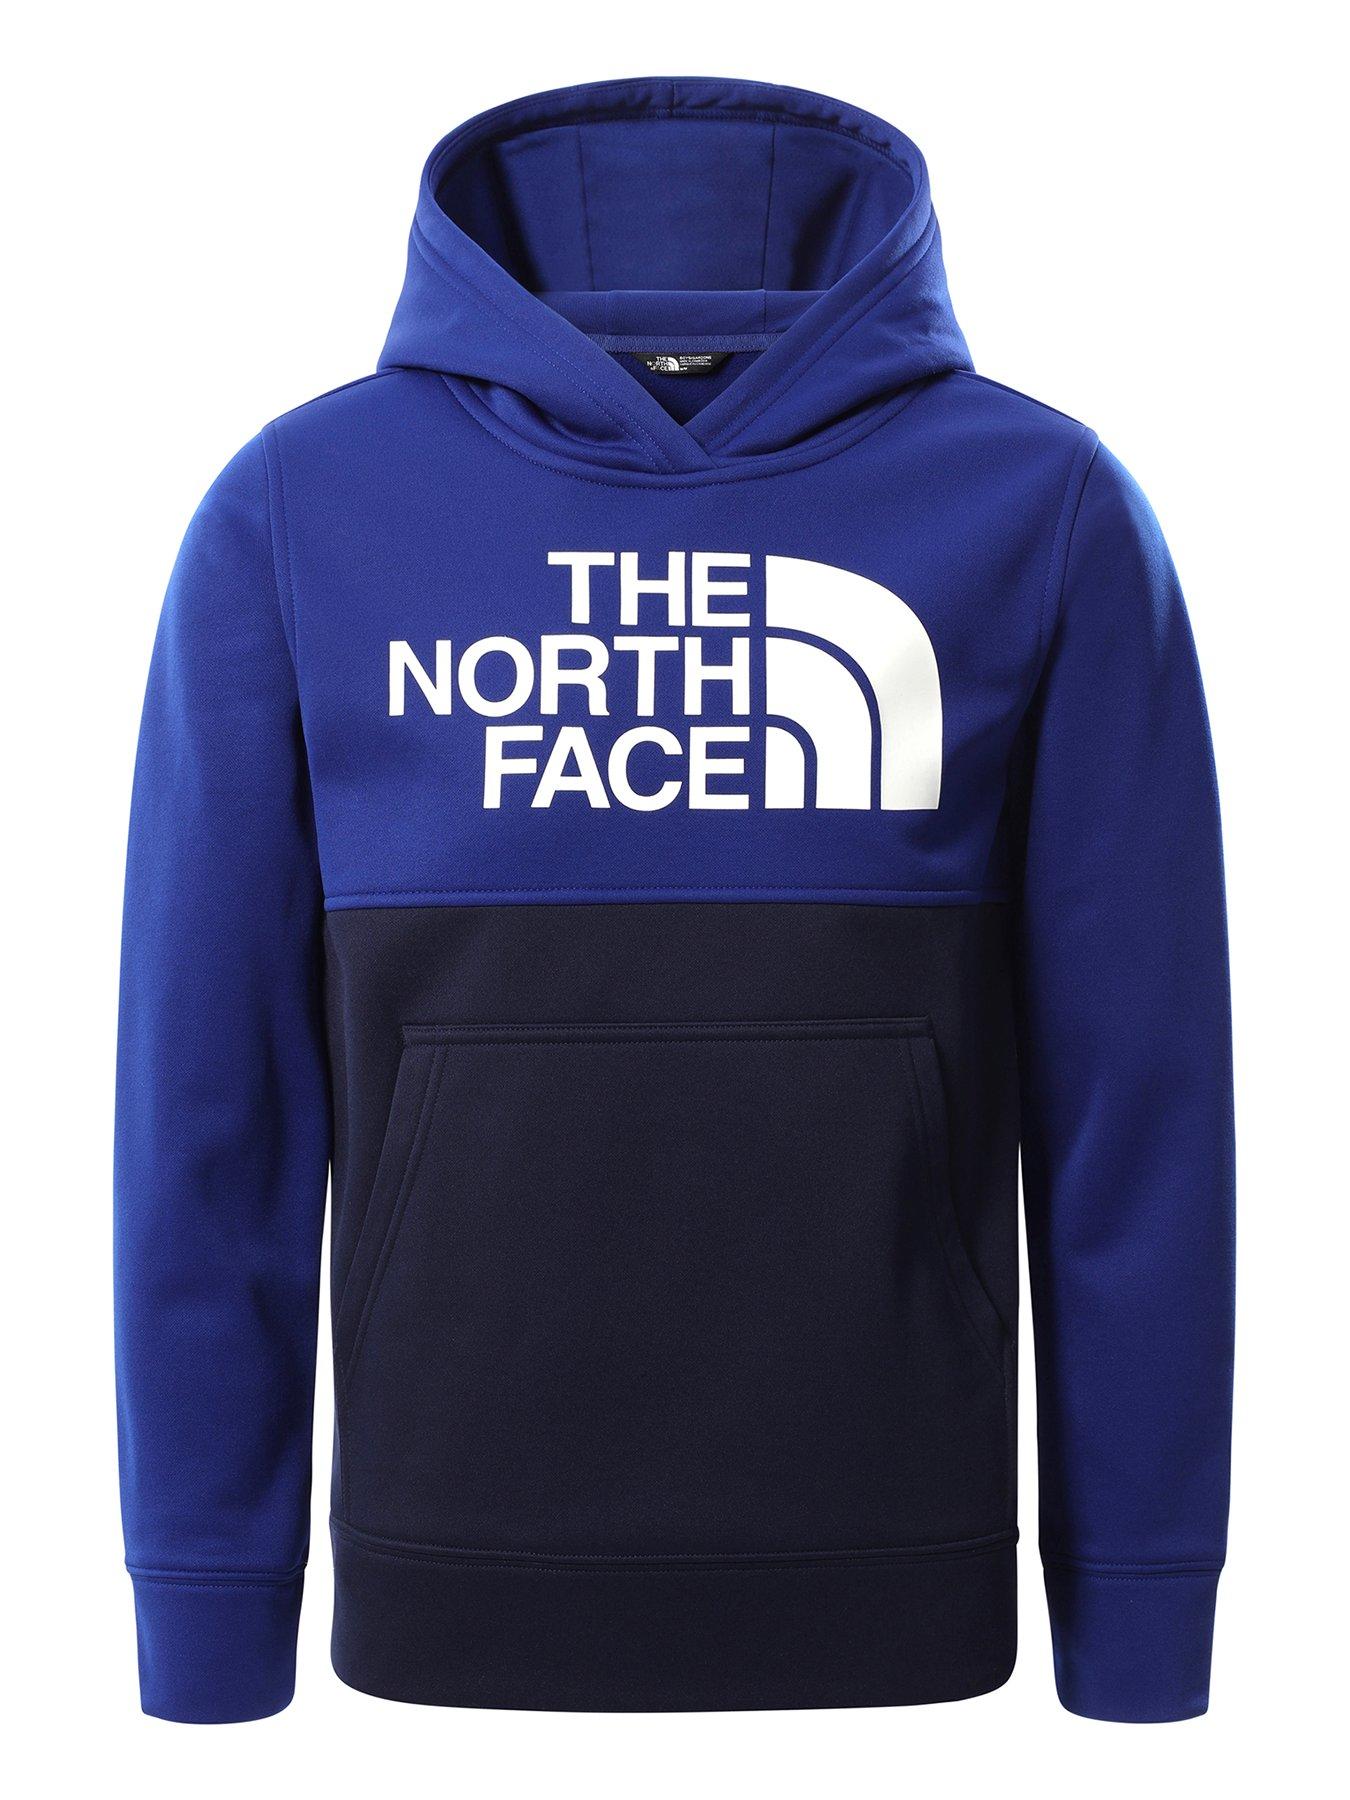 north face boys clothes